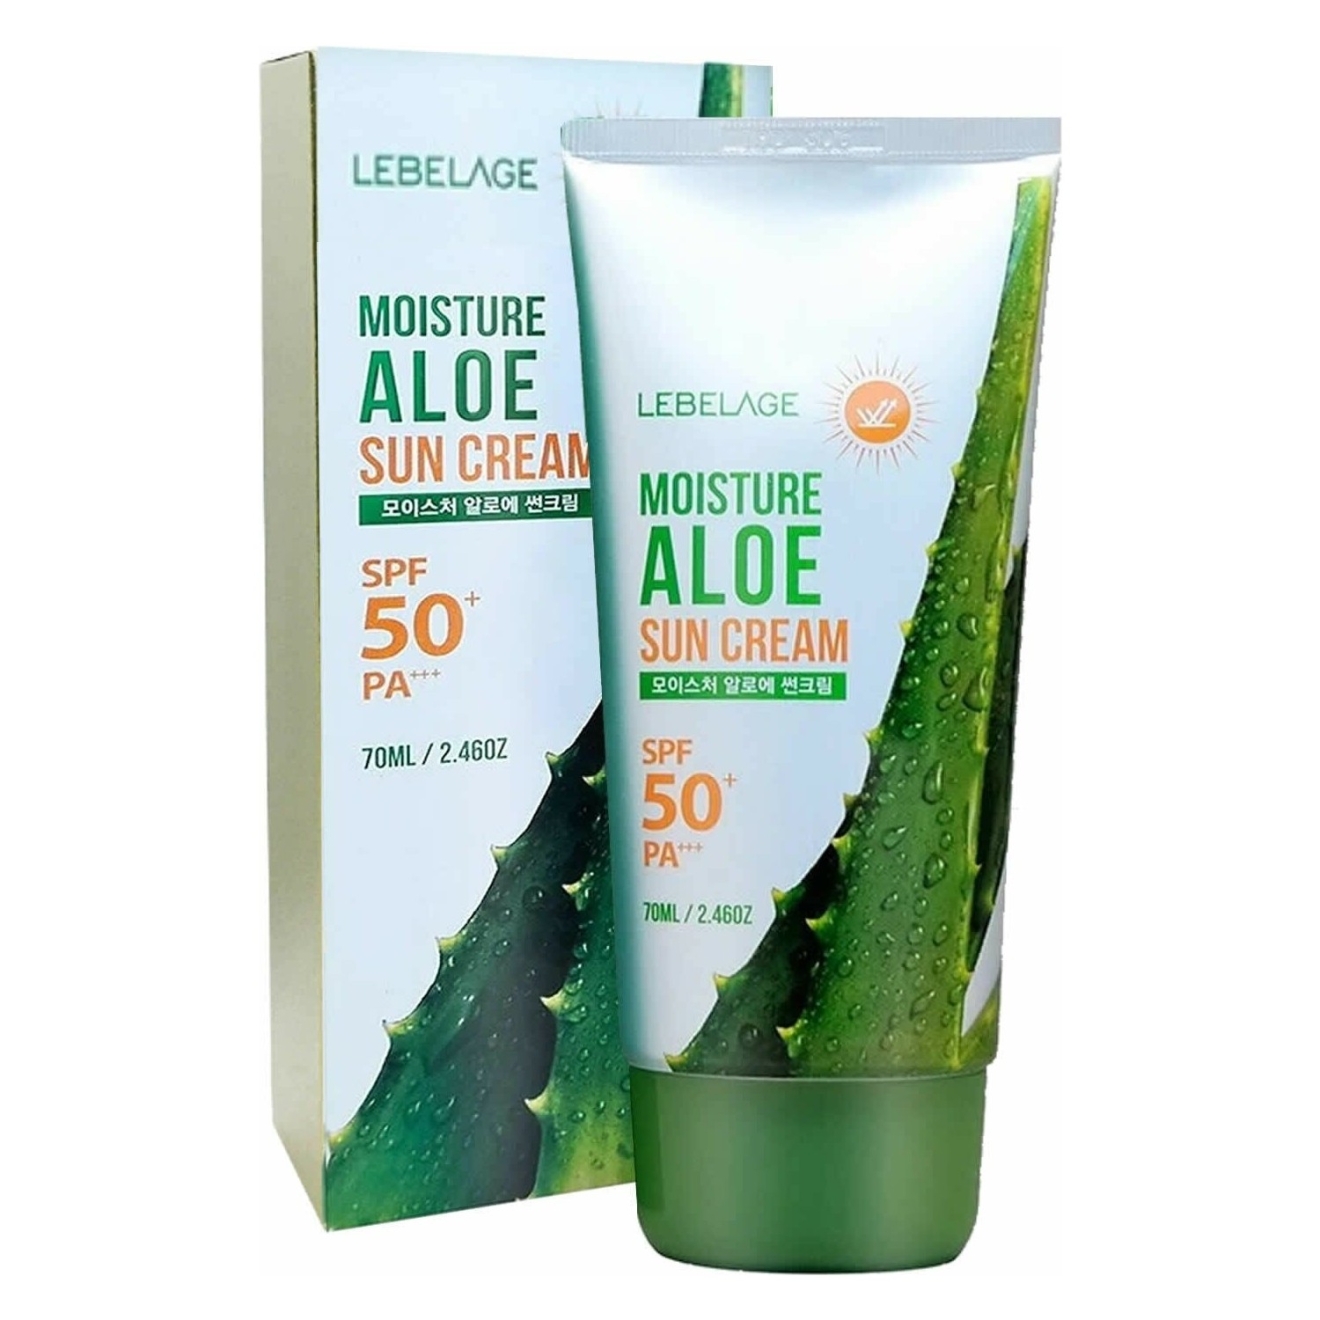 Lebelage, Moisture Aloe Sun Cream SPF 50, 70ml